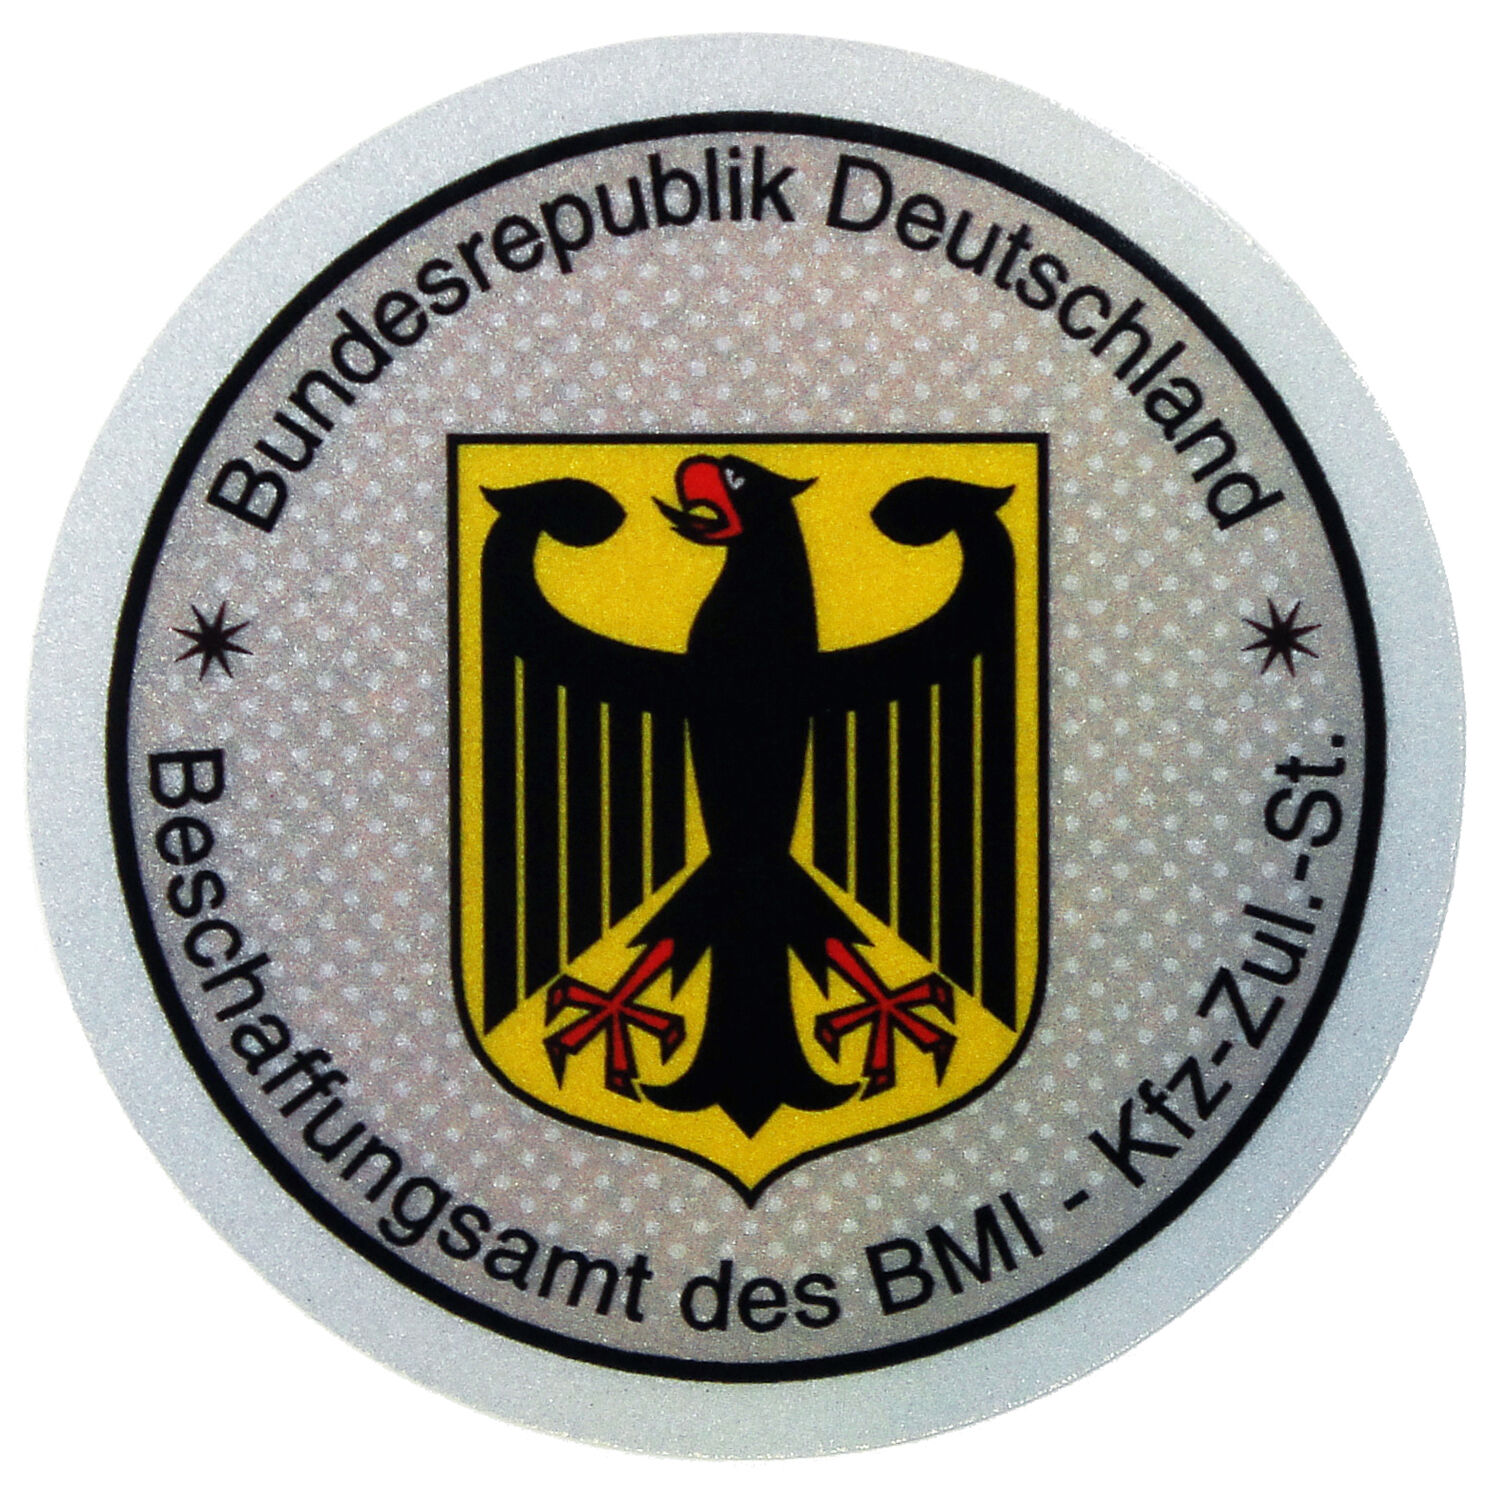 Police German License Plate Registration Seal & Inspection Sticker Set